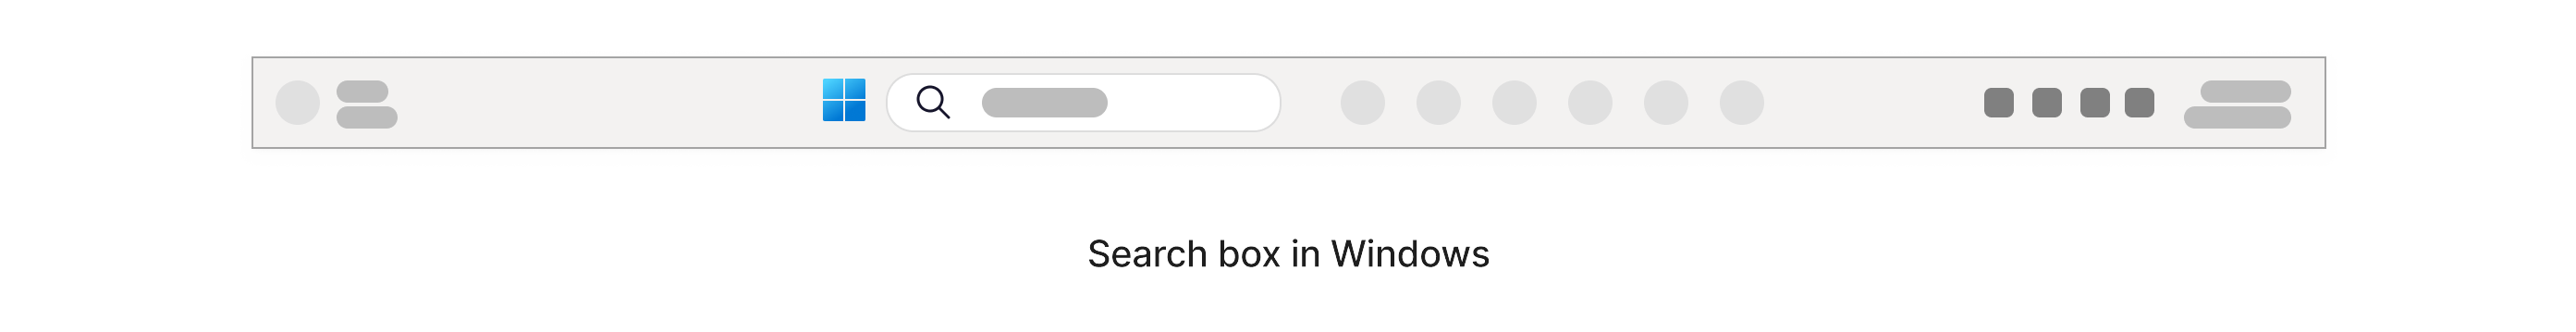 Caixa de pesquisa com um ícone de ampliação localizado na barra de tarefas do Windows na parte inferior da tela.